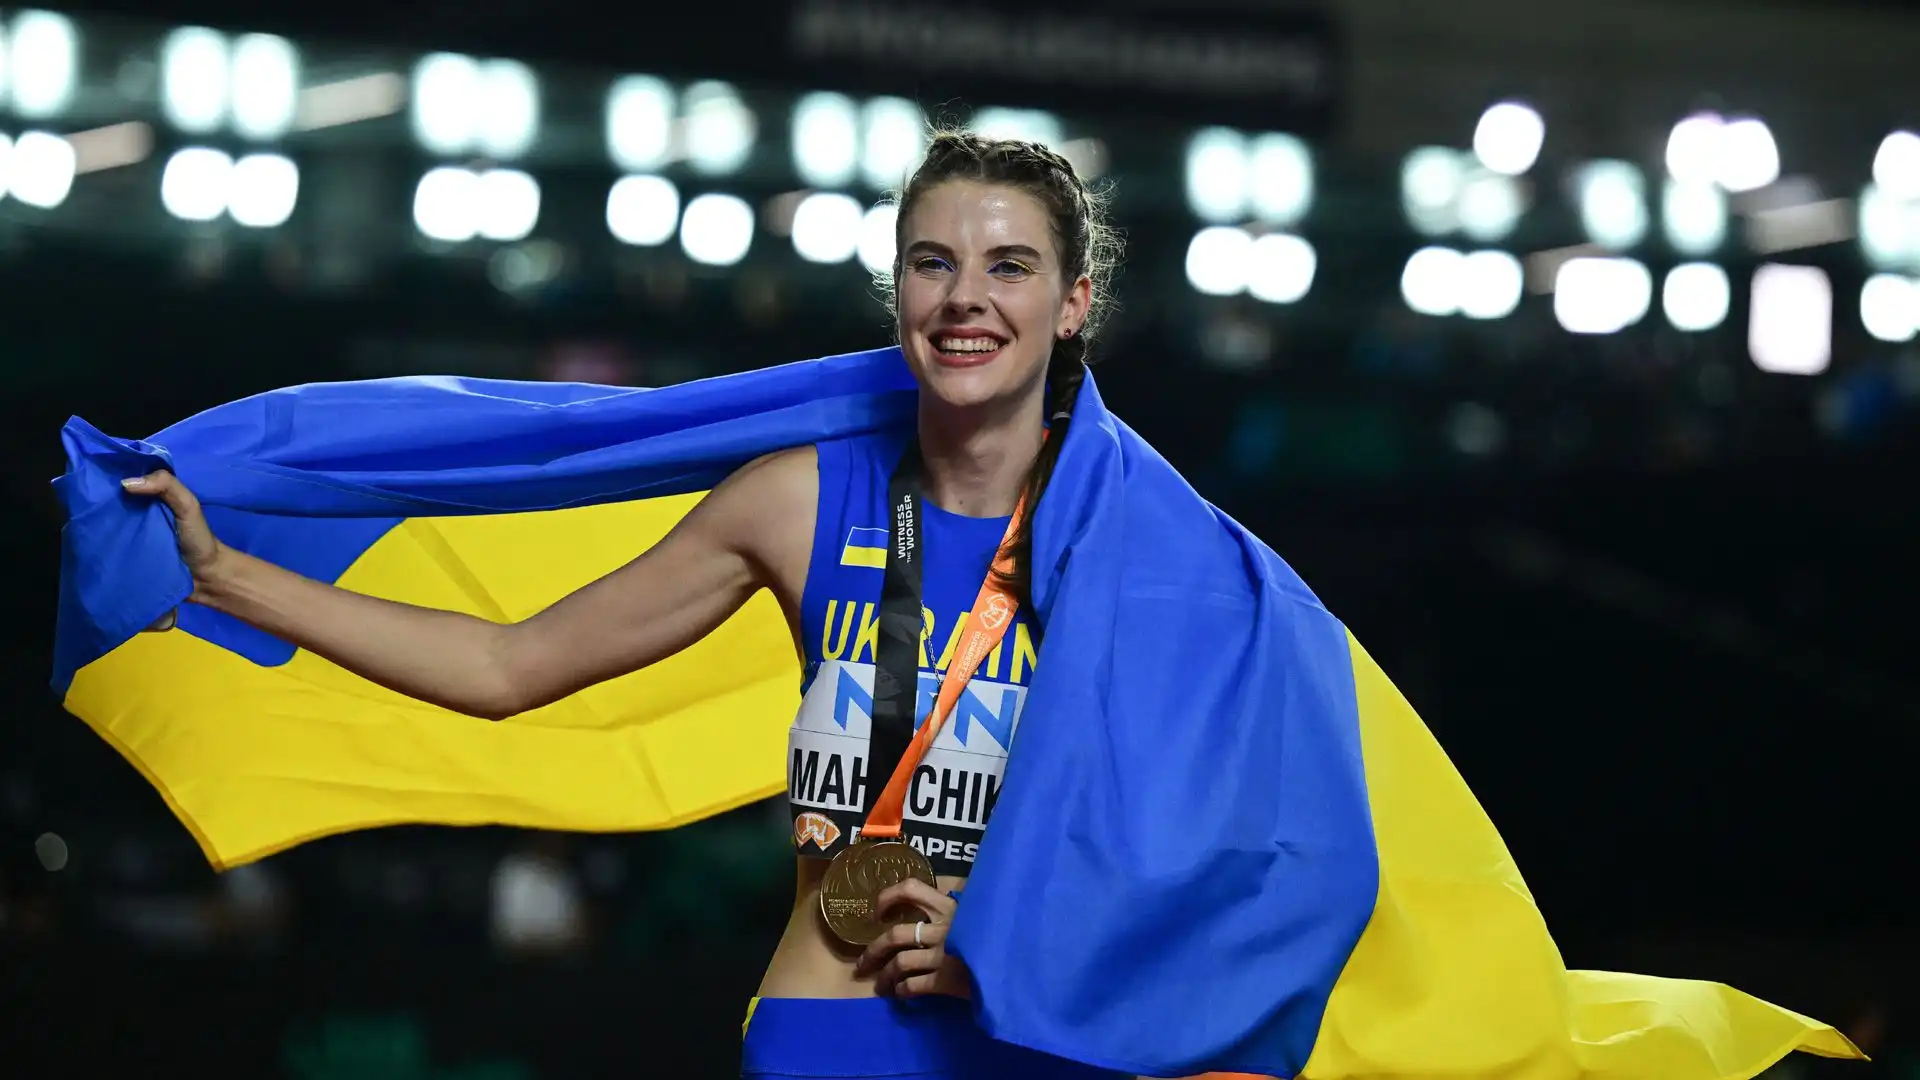 La saltatrice ucraina era tra le favorite e non ha deluso